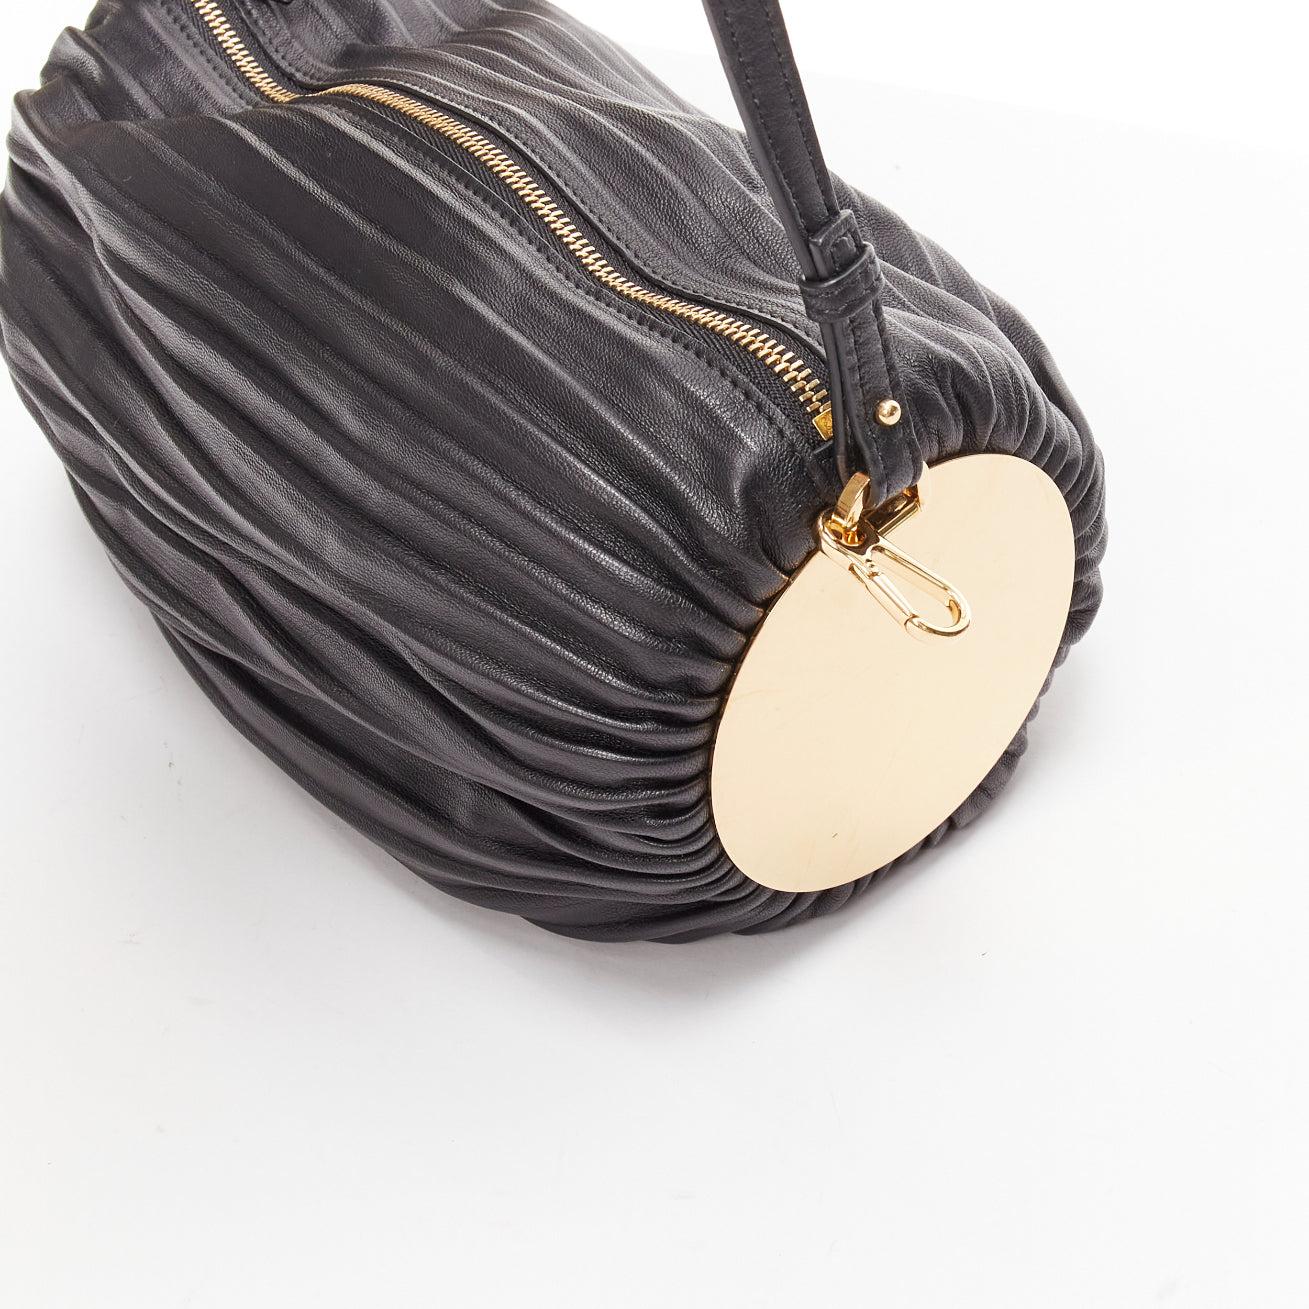 LOEWE Bracelet Pouch black pleated leather gold anagram logo wrist shoulder bag For Sale 4